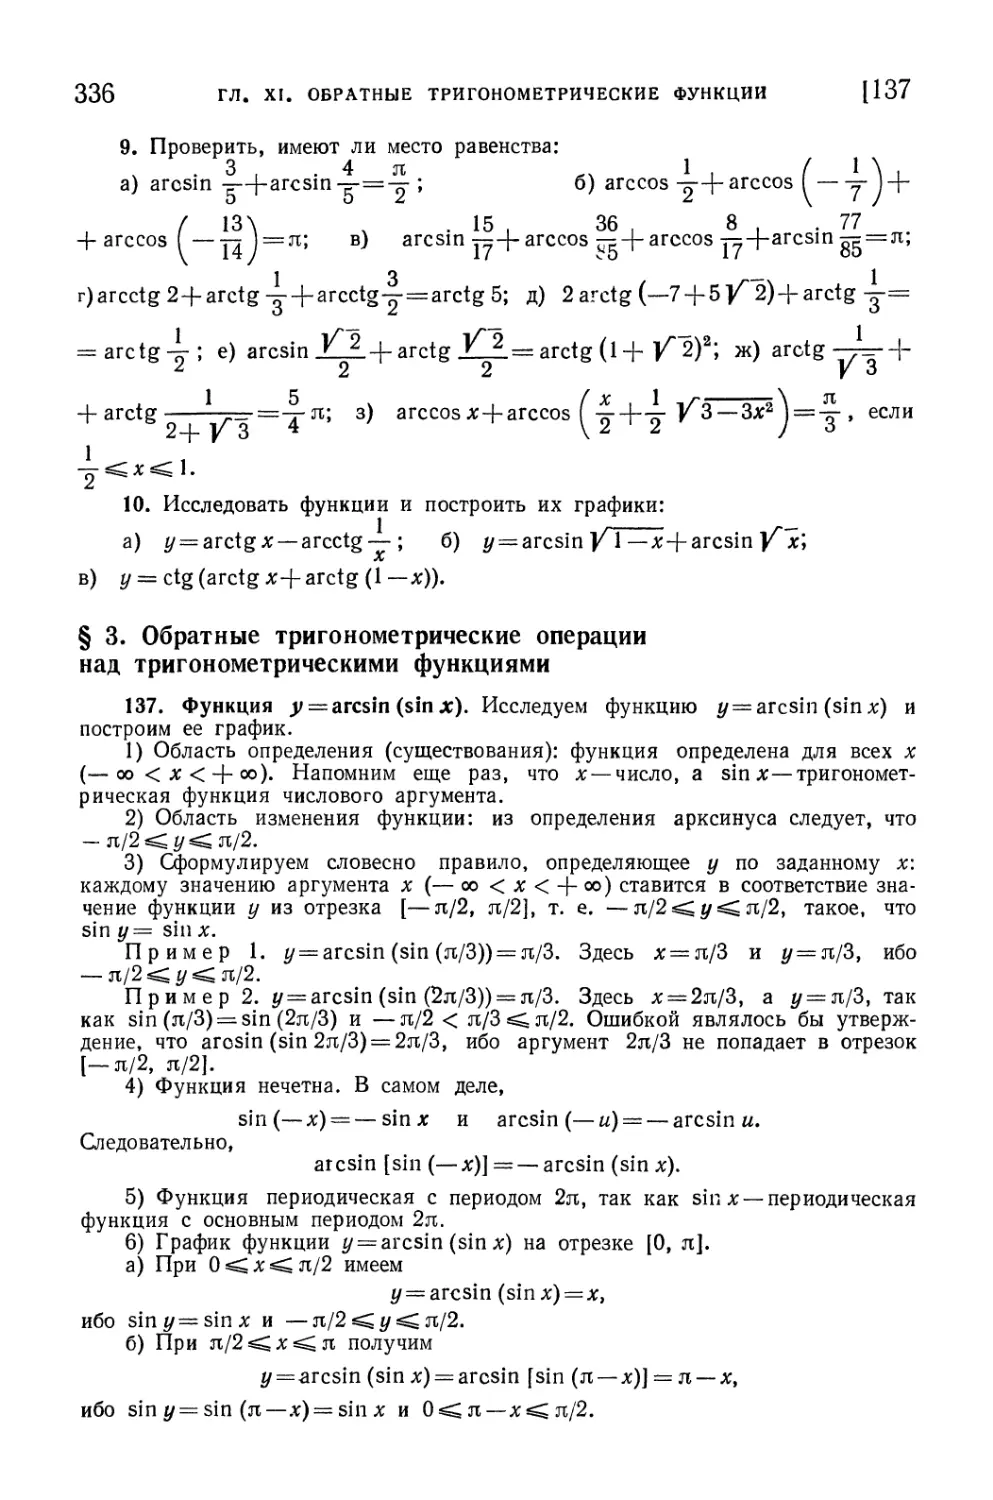 § 3. Обратные тригонометрические операции над тригонометрическими функциями